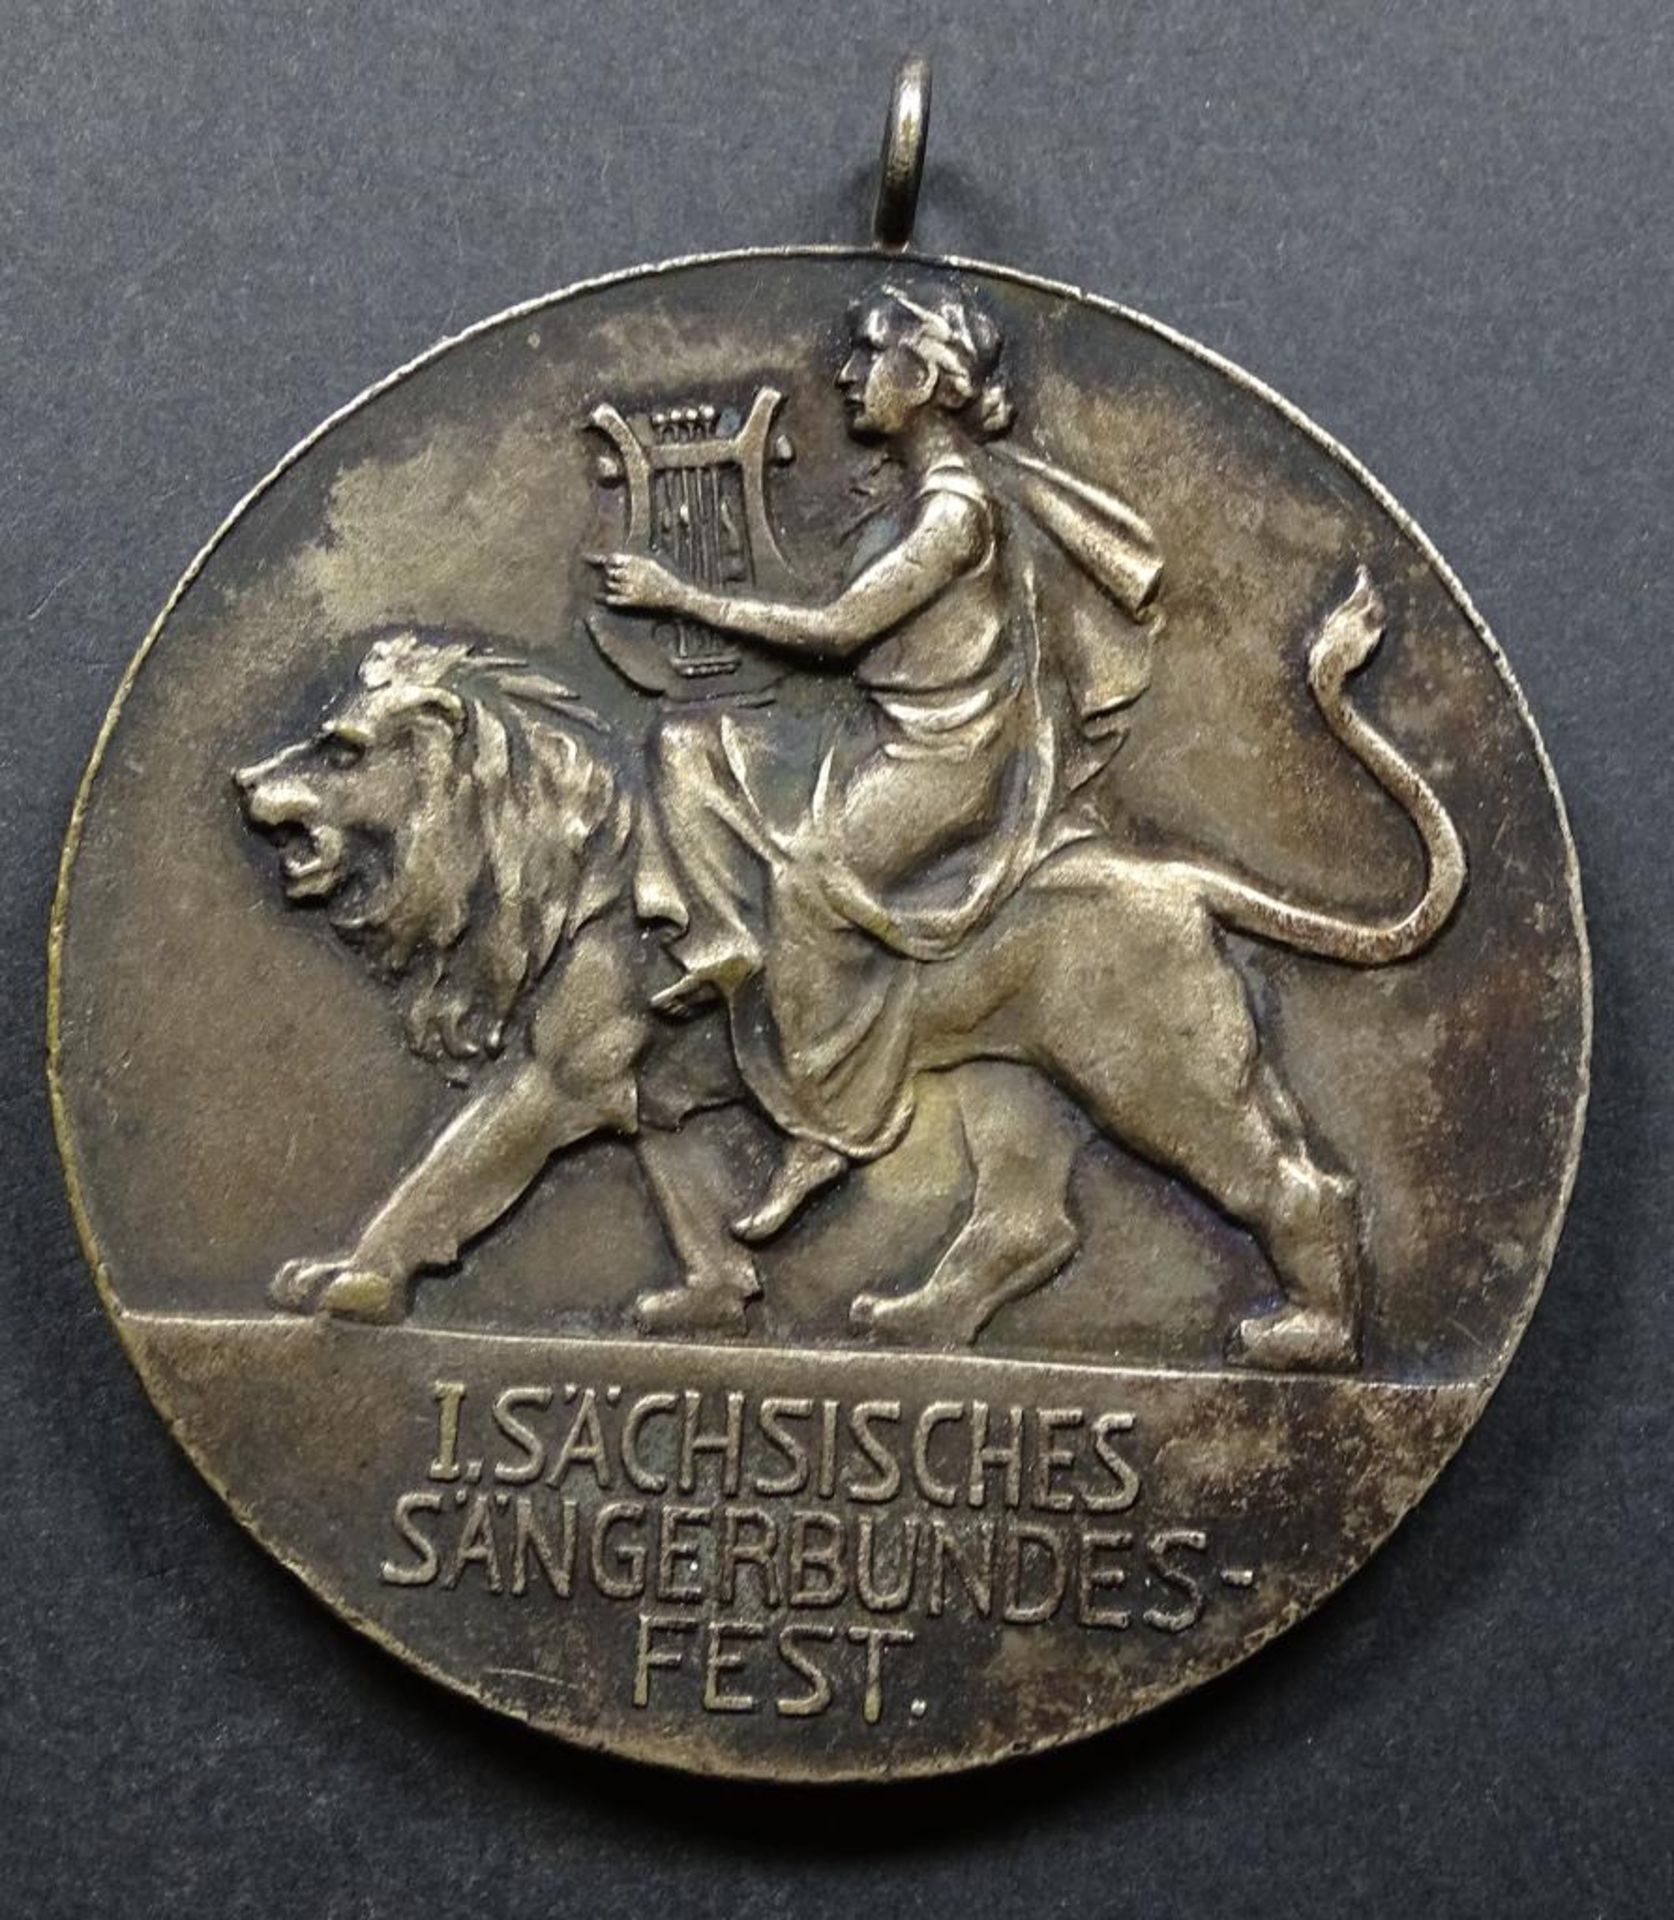 Große Medaille, Sängerbundesfest,d-59mm, Dresden 19 - Bild 2 aus 2